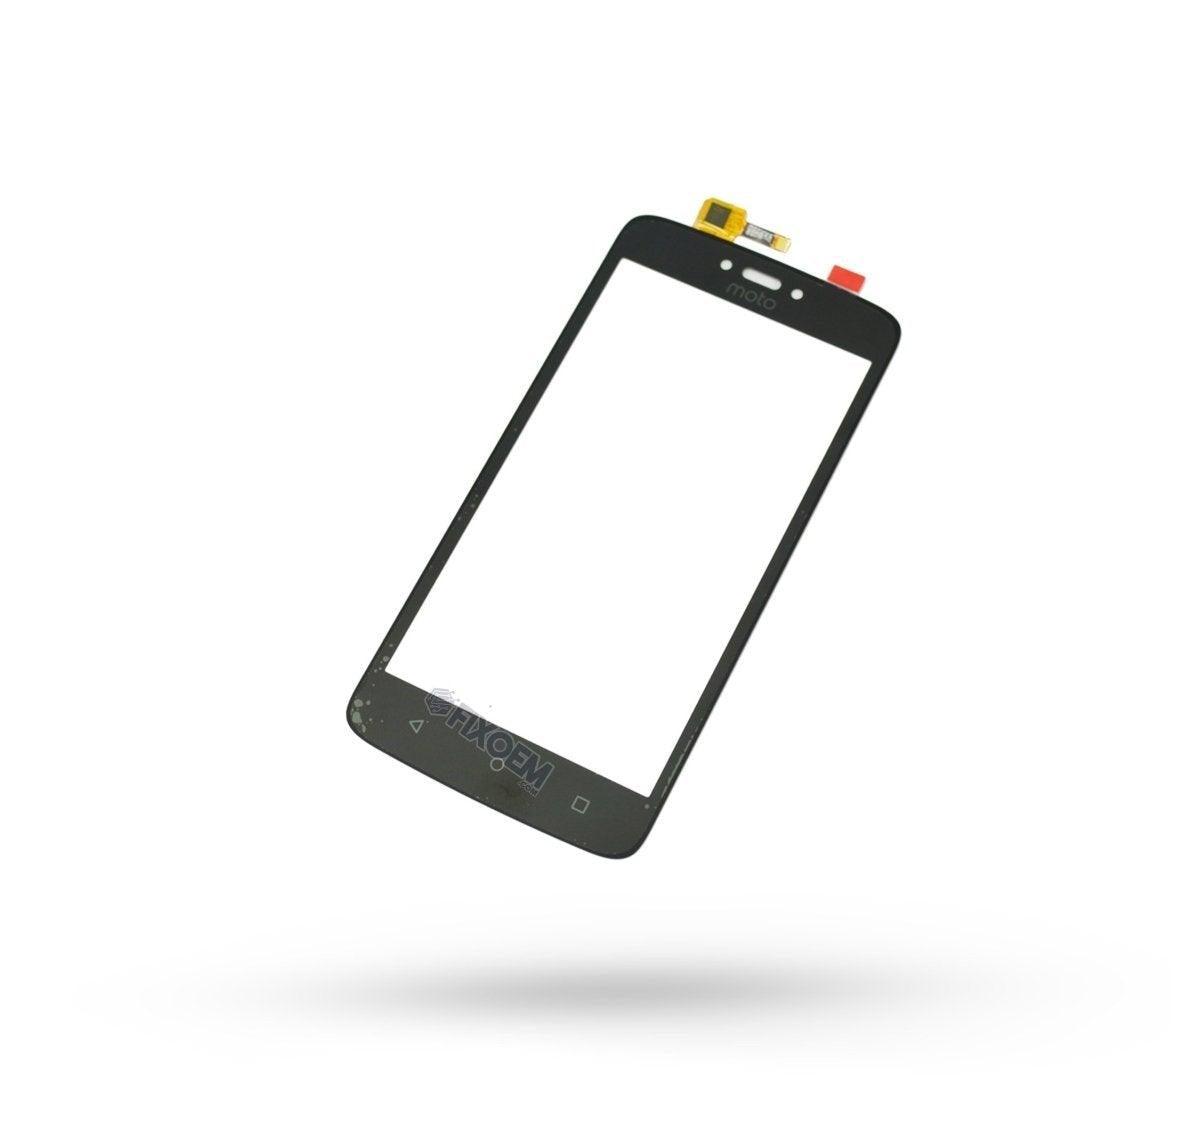 Touch Moto C Negro Xt1750 a solo $ 70.00 Refaccion y puestos celulares, refurbish y microelectronica.- FixOEM